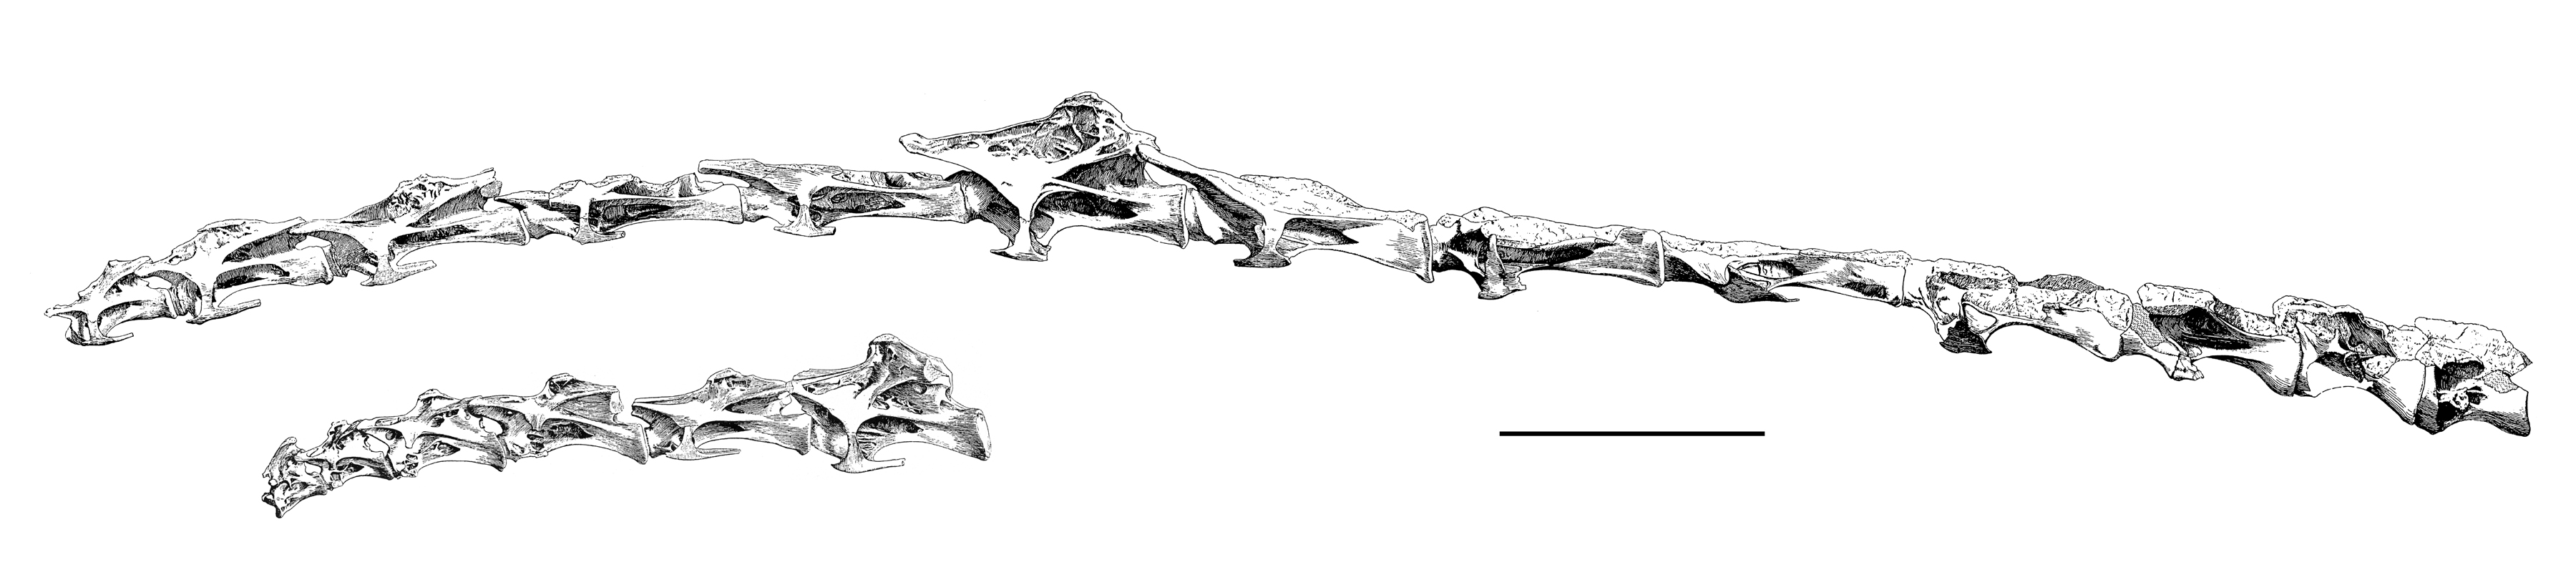 Brachiosaurus SII cervical series